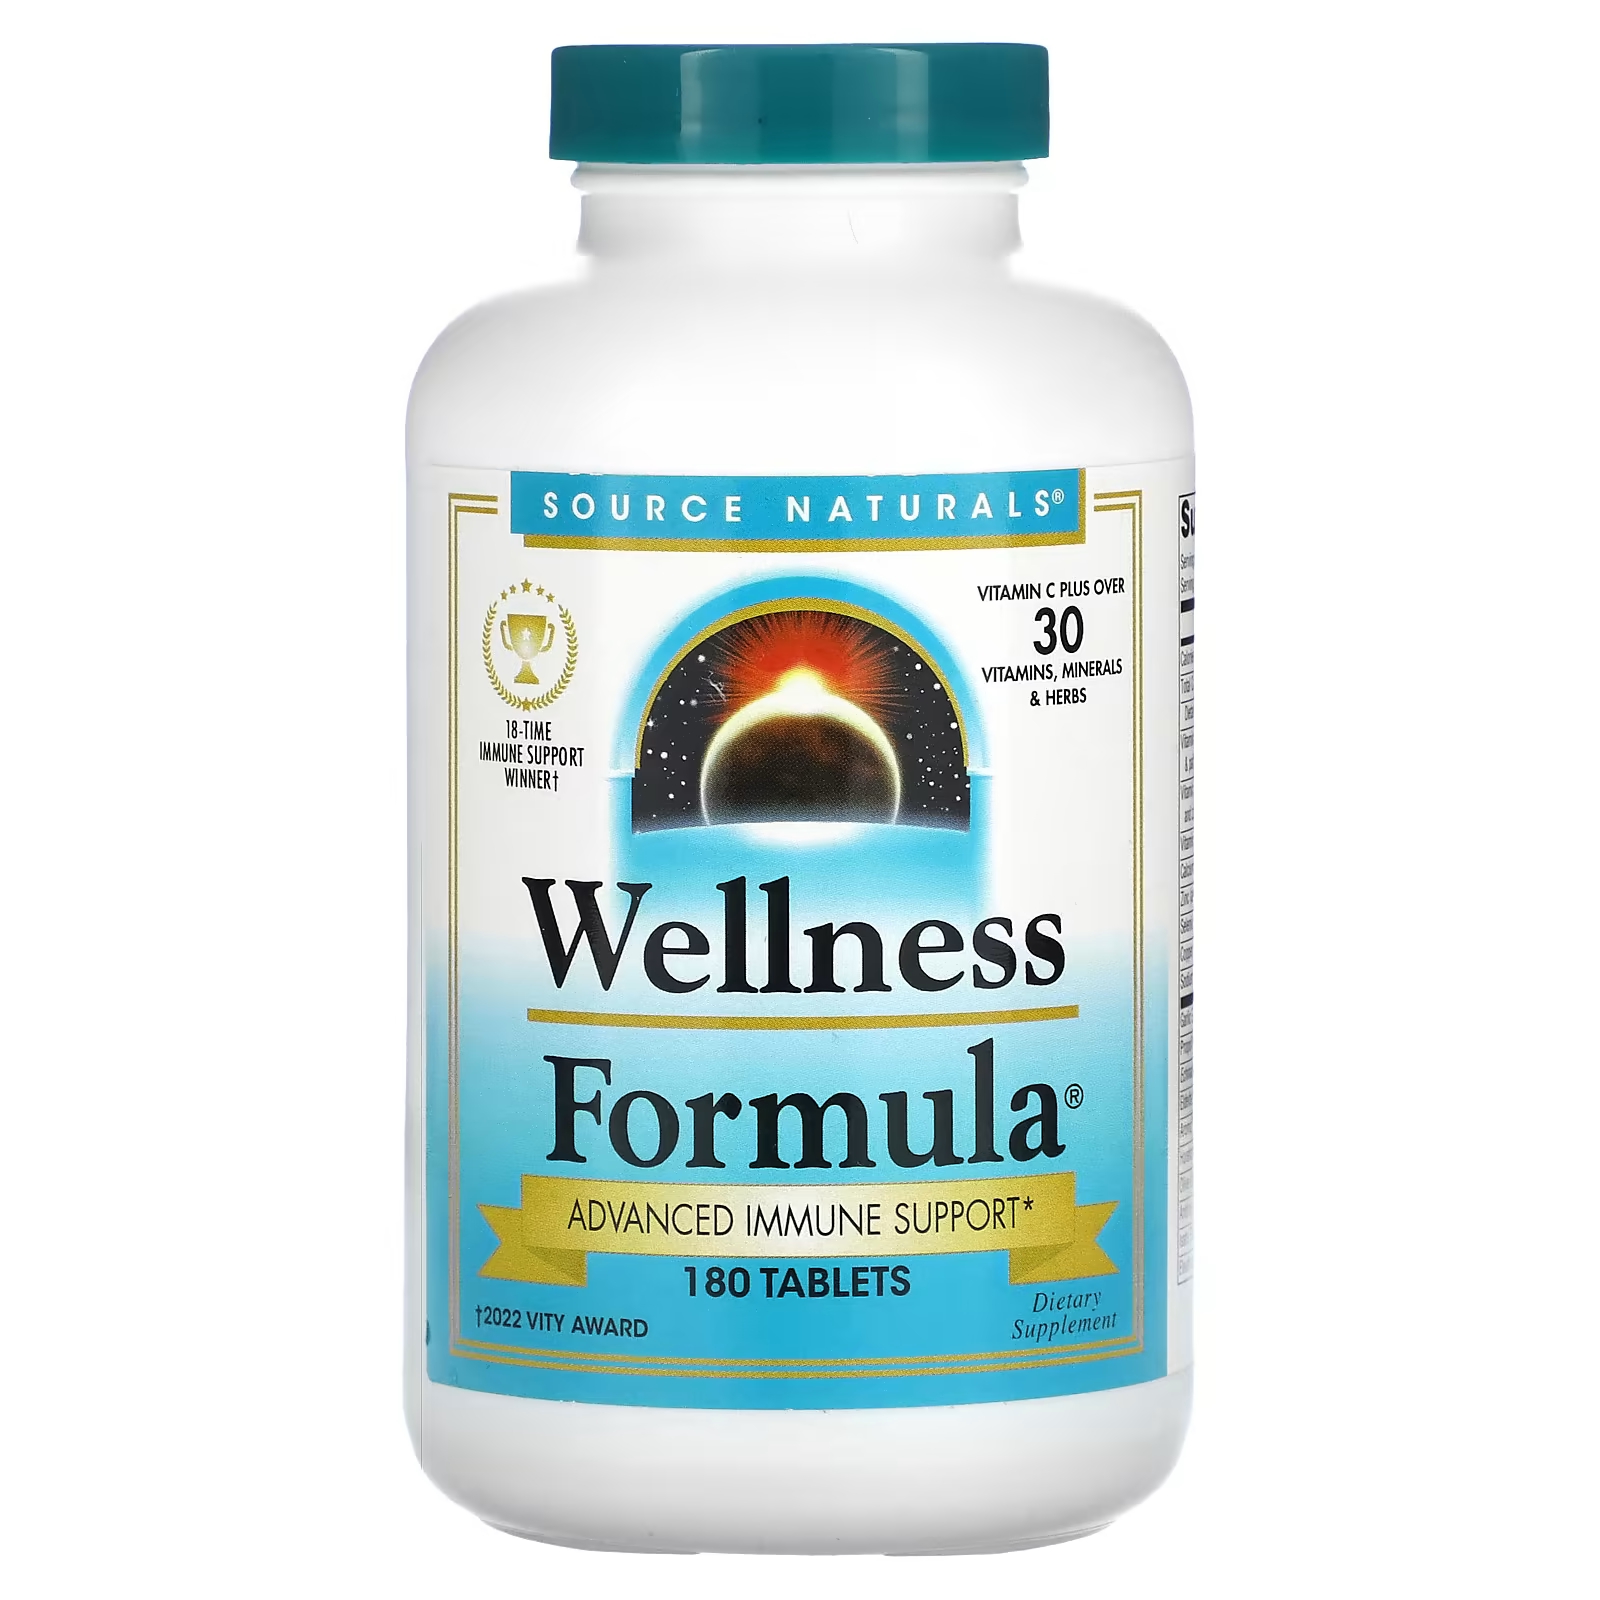 Пищевая добавка Source Naturals Wellness Formula расширенная поддержка иммунитета, 180 таблеток